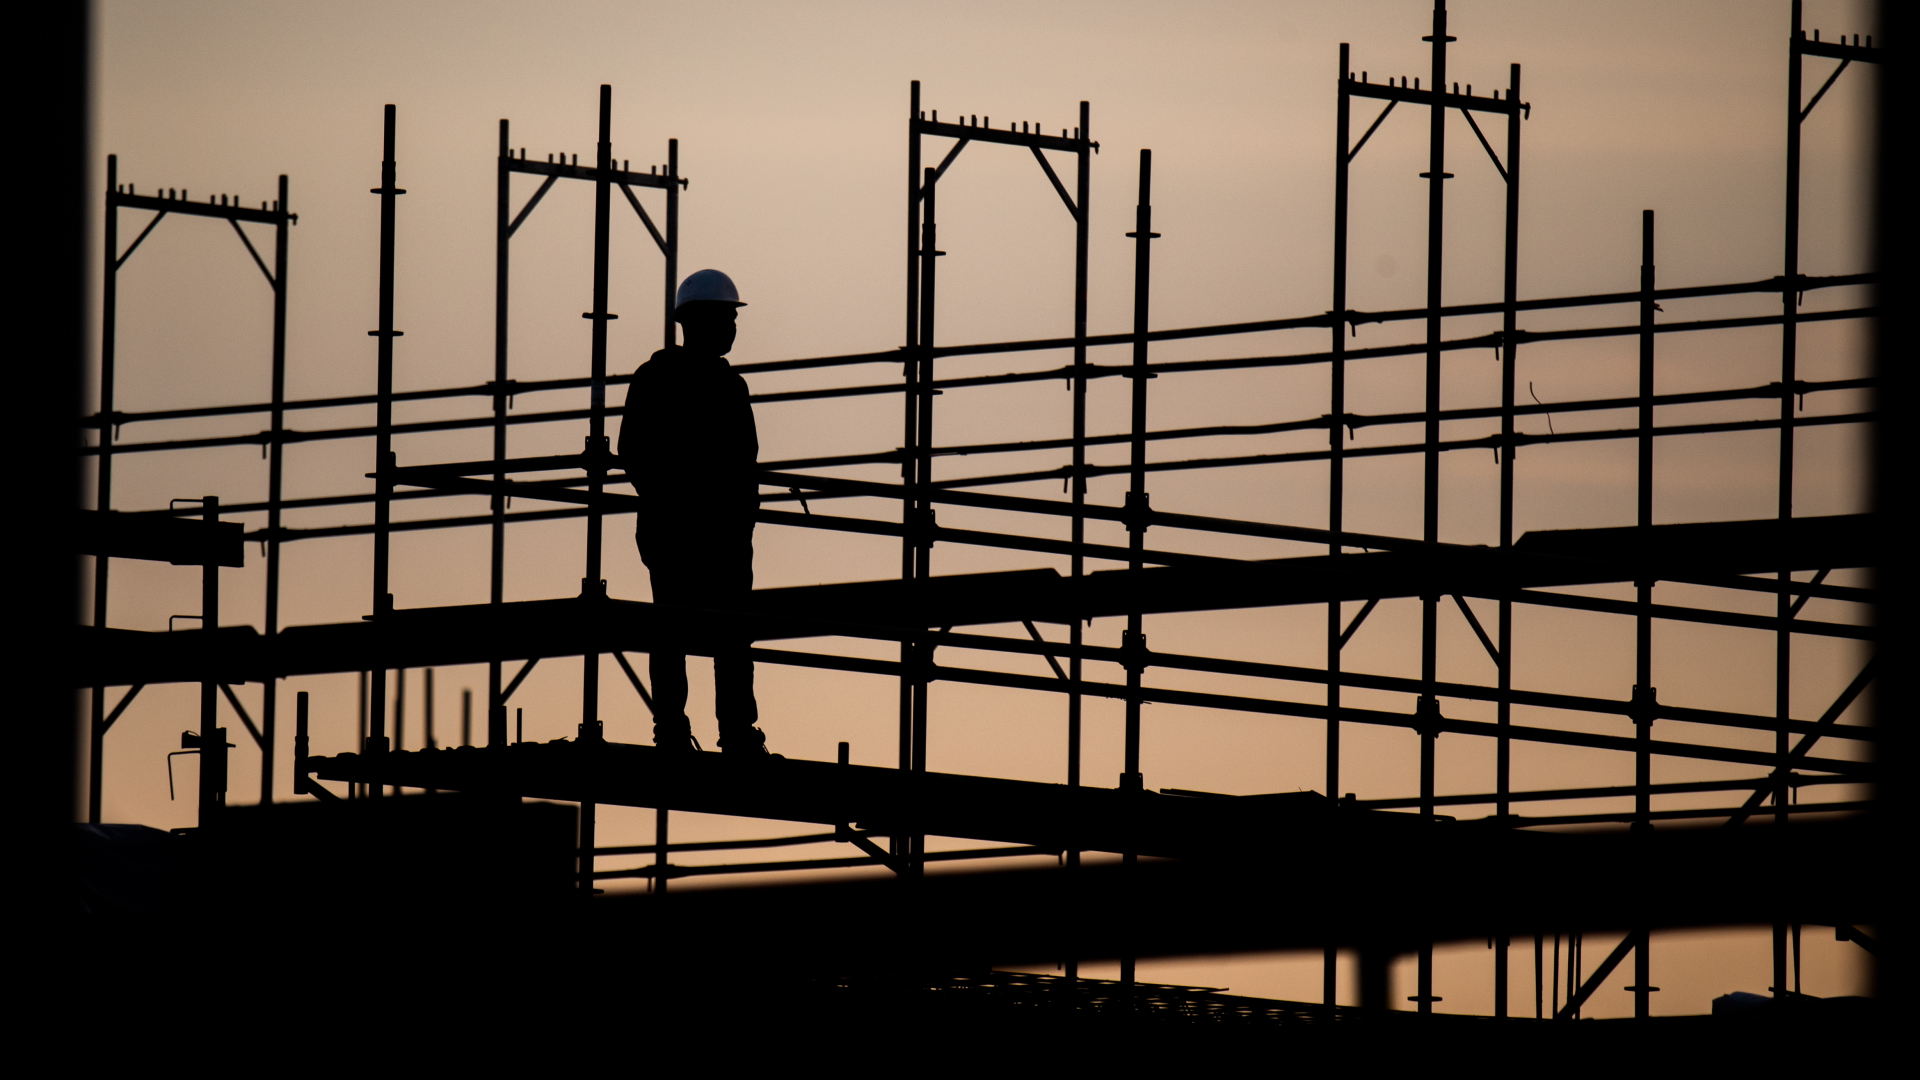 Die Silhouette eines Bauarbeiters zeichnet sich auf einer Baustelle vor dem verfärbten Morgenhimmel ab.